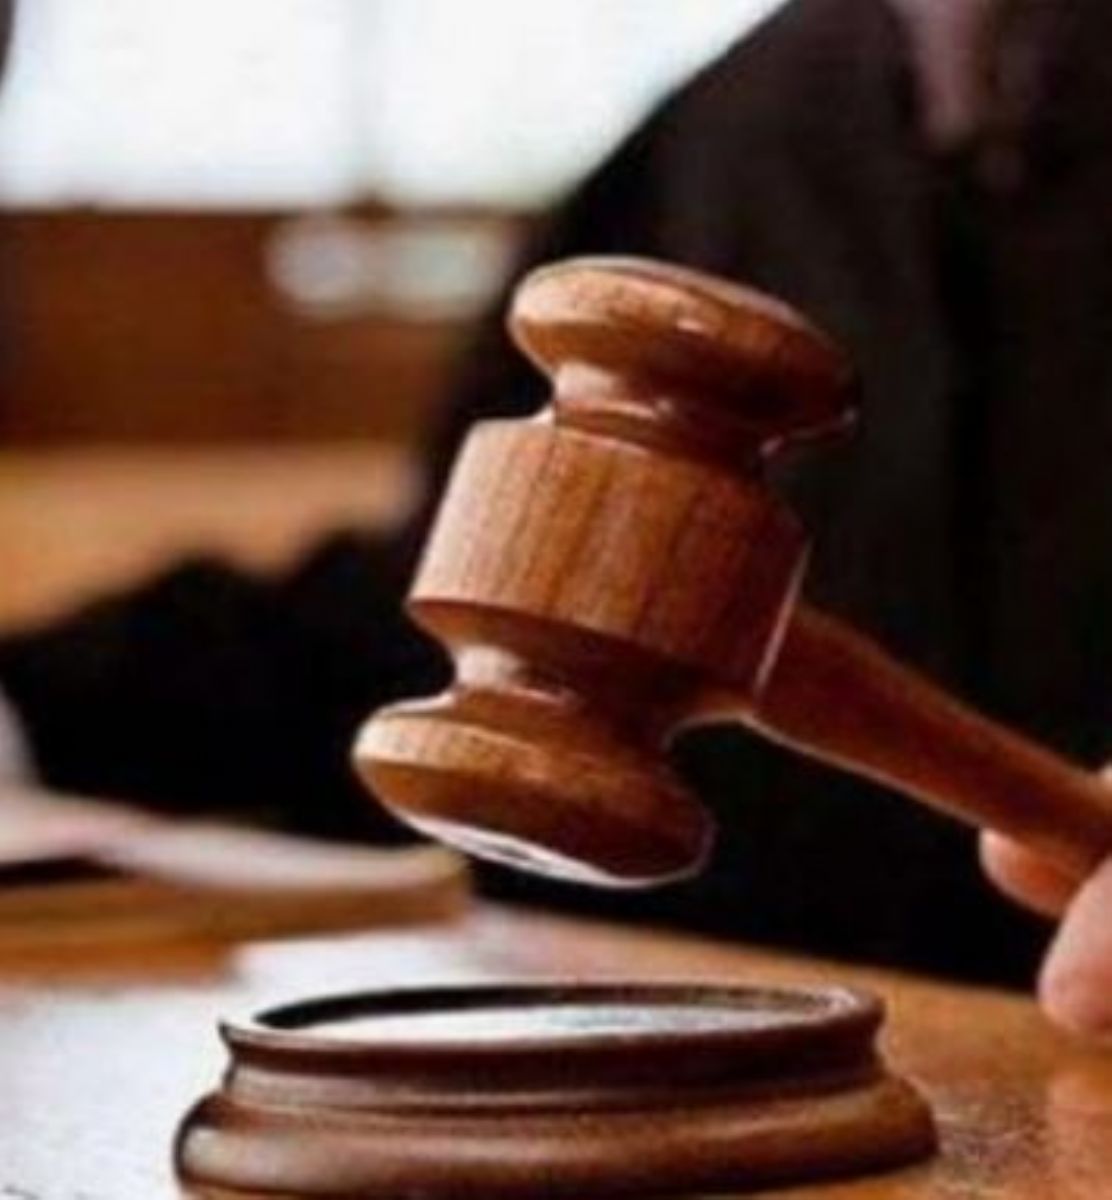 محكمة الصلح تدين متهم بالذم والتشهير لشركة كبرى عبر الانترنت وتحكم عليه بالسجن